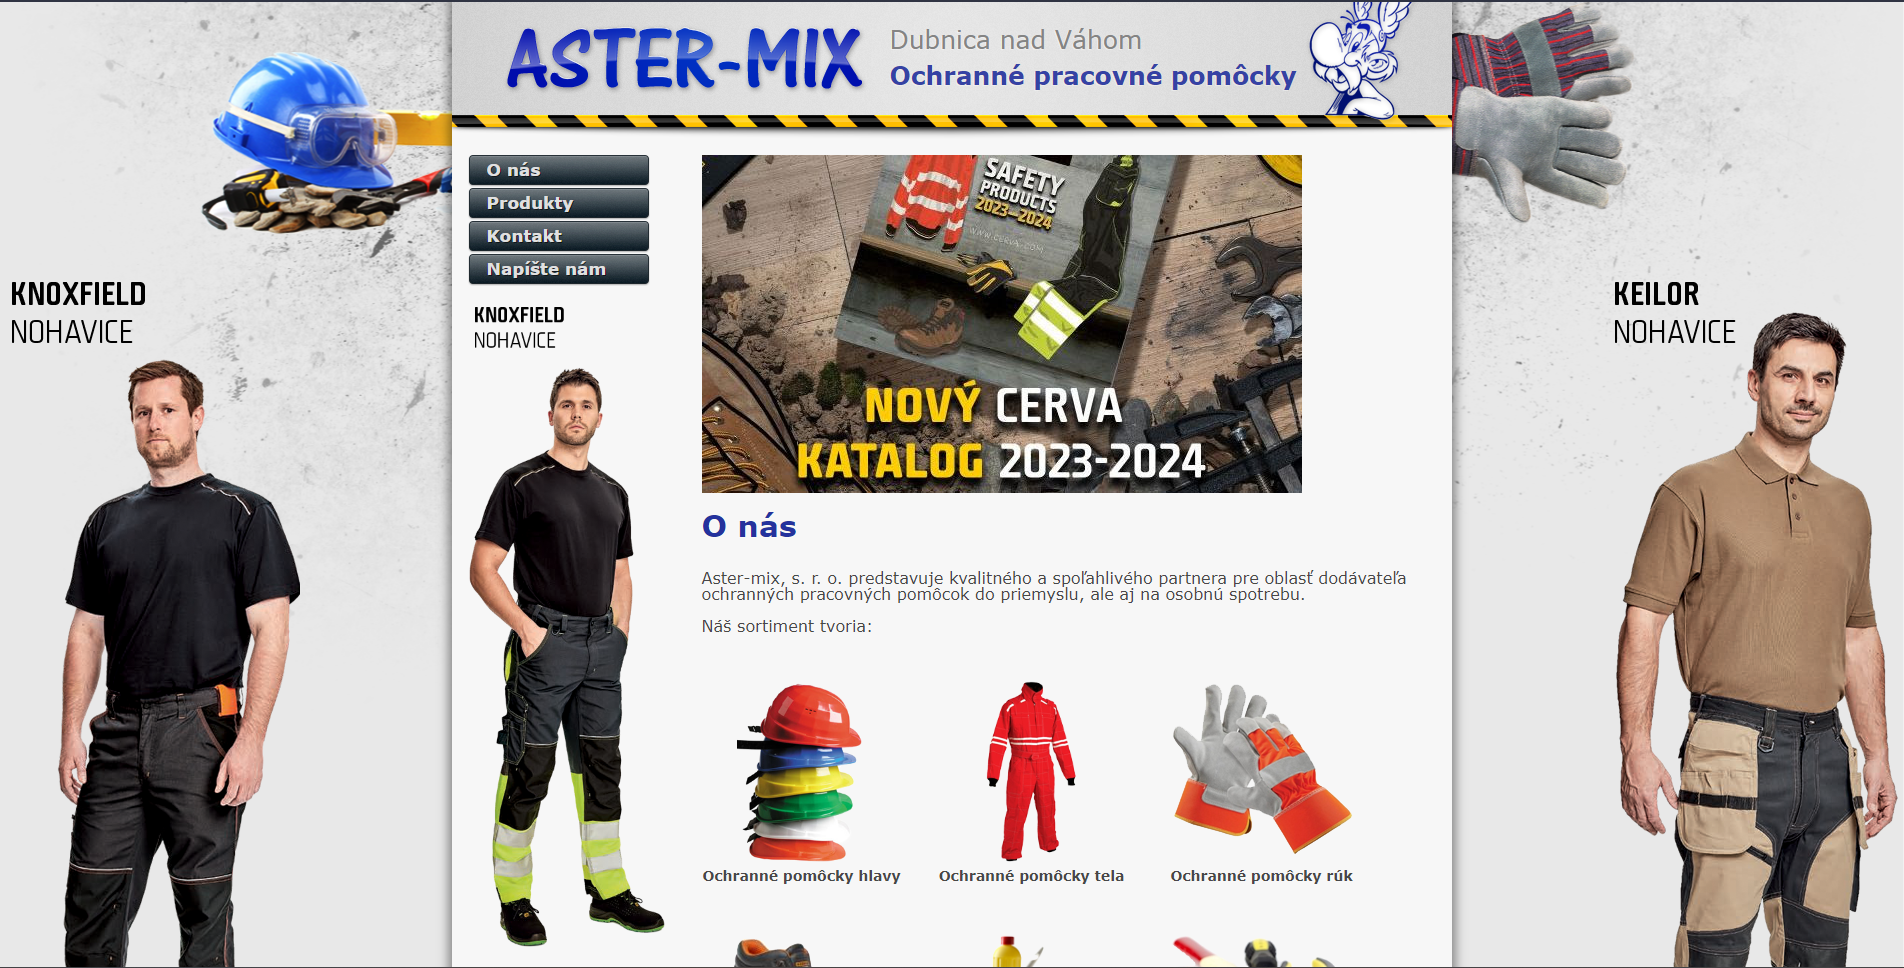 Aster-mix